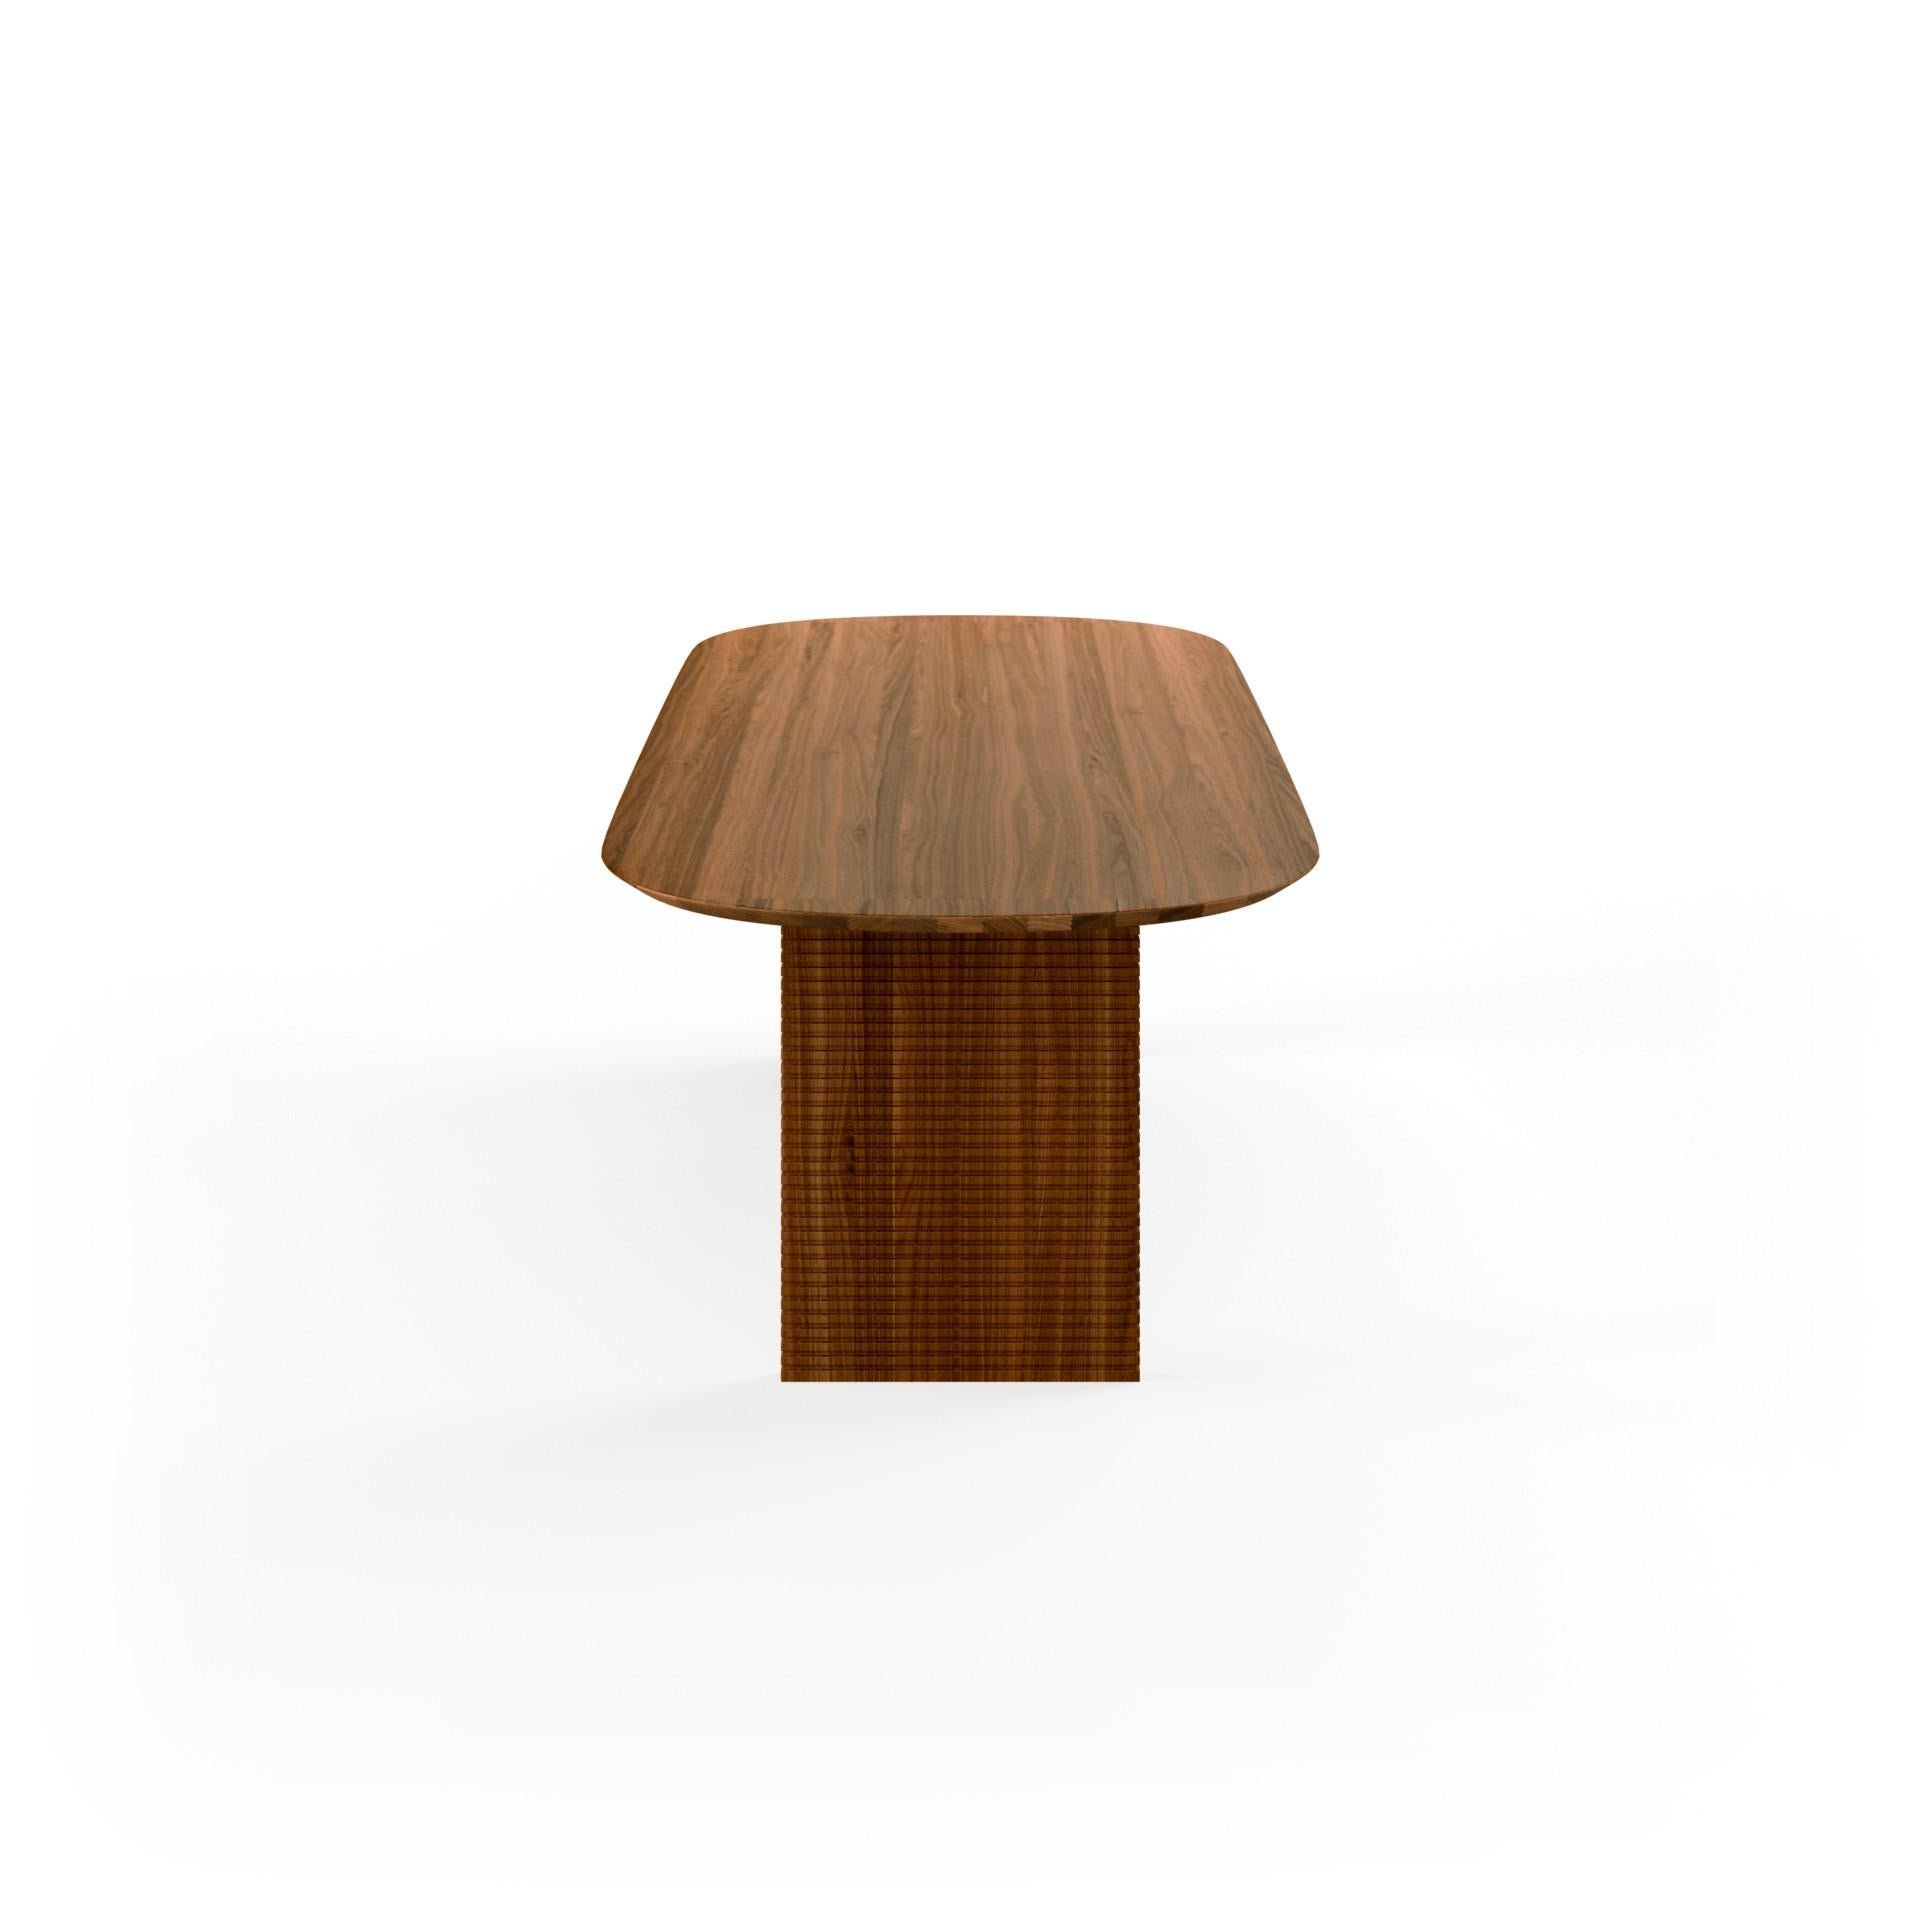 Semi est une table de salle à manger d'inspiration nordique entièrement fabriquée en bois, où les belles veines peuvent se déployer le long du plateau solide.

Eleg Semi est une table à l'allure simple et élégante laissant parler les qualités du